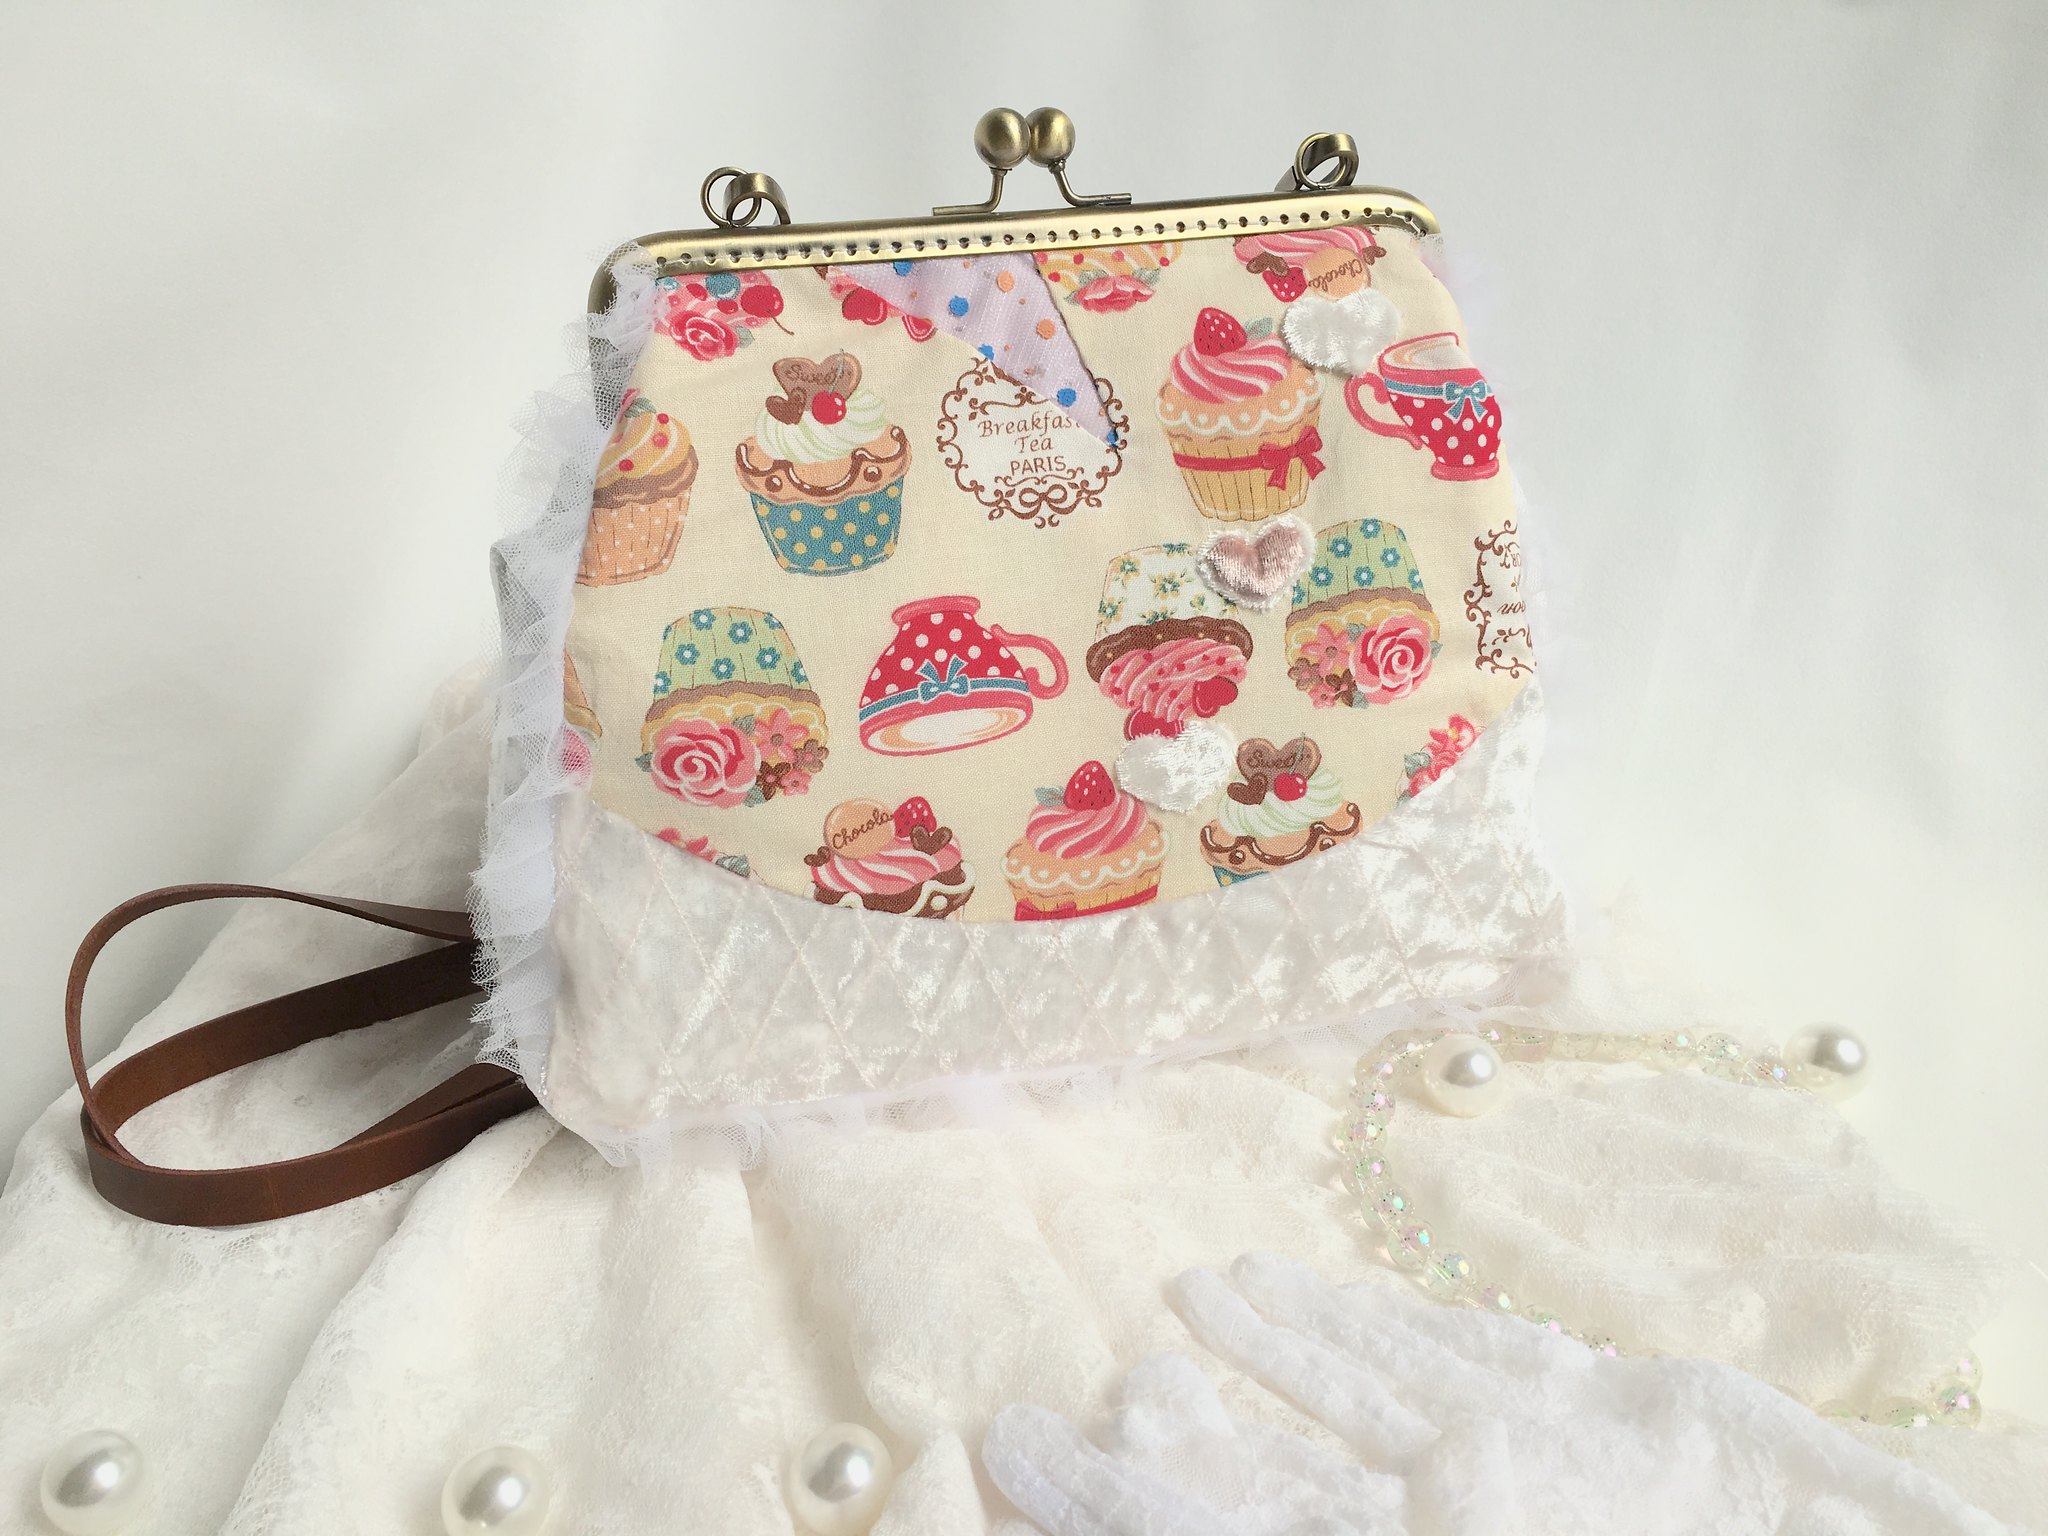 風后妃設計口金包奶油色蛋糕吻鎖包包gamaguchi bag for home decoration 